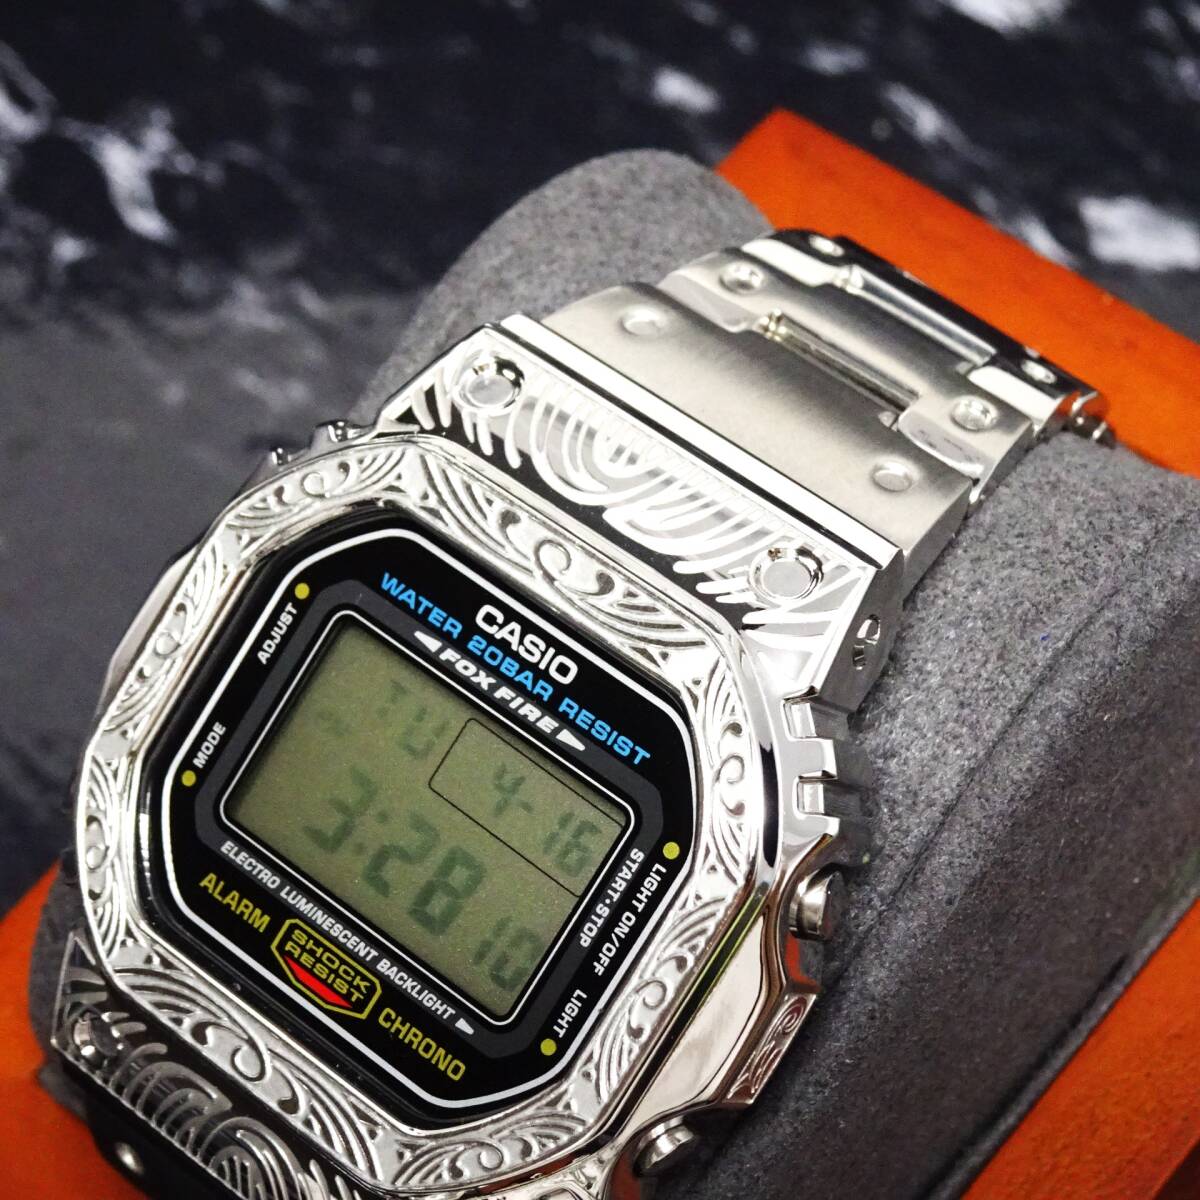 〓送料無料〓新品〓Gショックカスタム本体付きDW5600デジタル腕時計ステンレス製ベネチアン柄エンボス加工ベゼル・フルメタルモデル_画像8